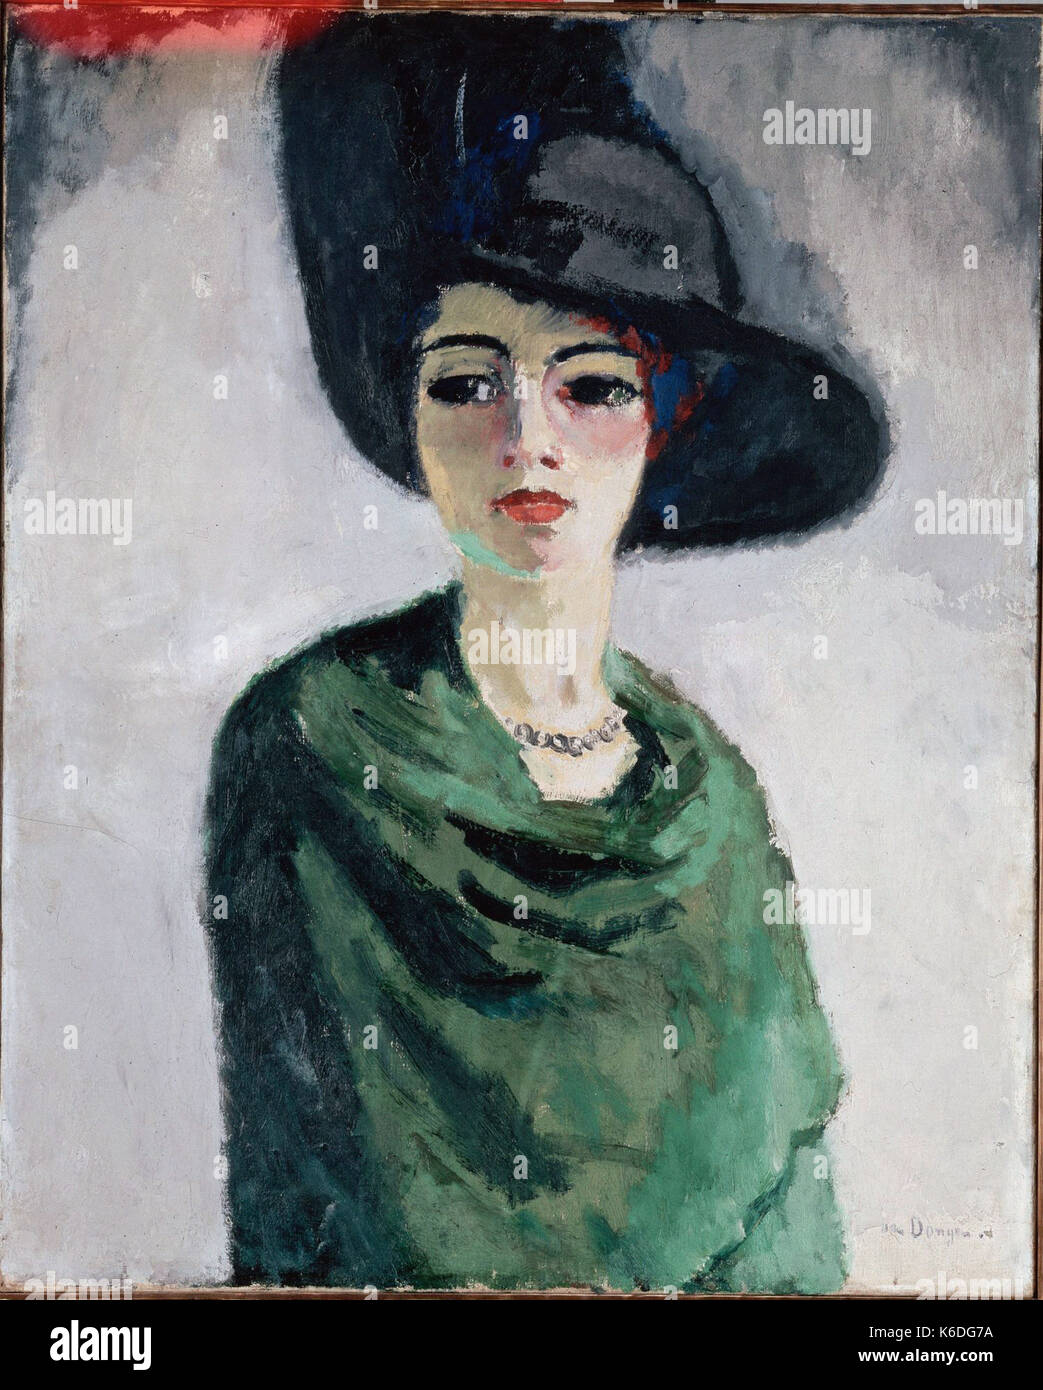 Kees Van Dongen - La dame au chapeau noir Stock Photo - Alamy